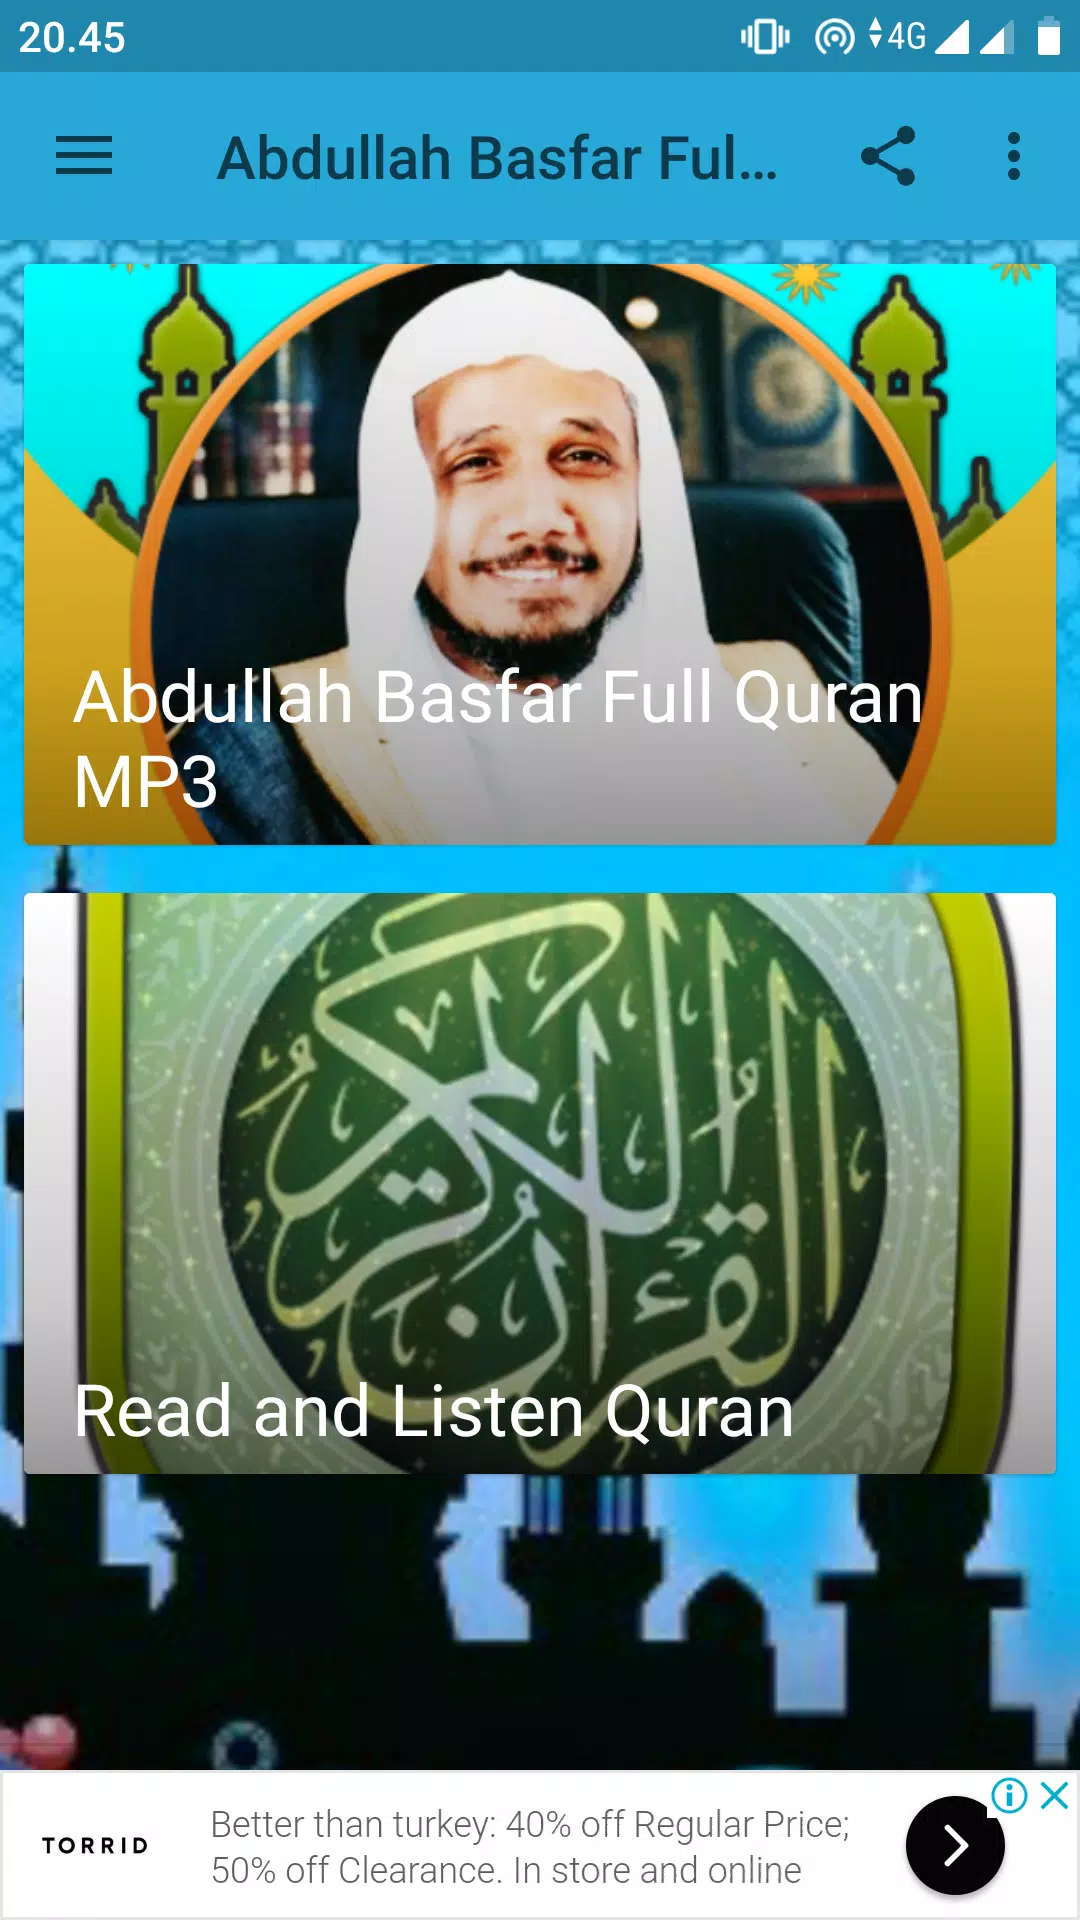 Abdullah Basfar Full Quran MP3 APK for Android Download